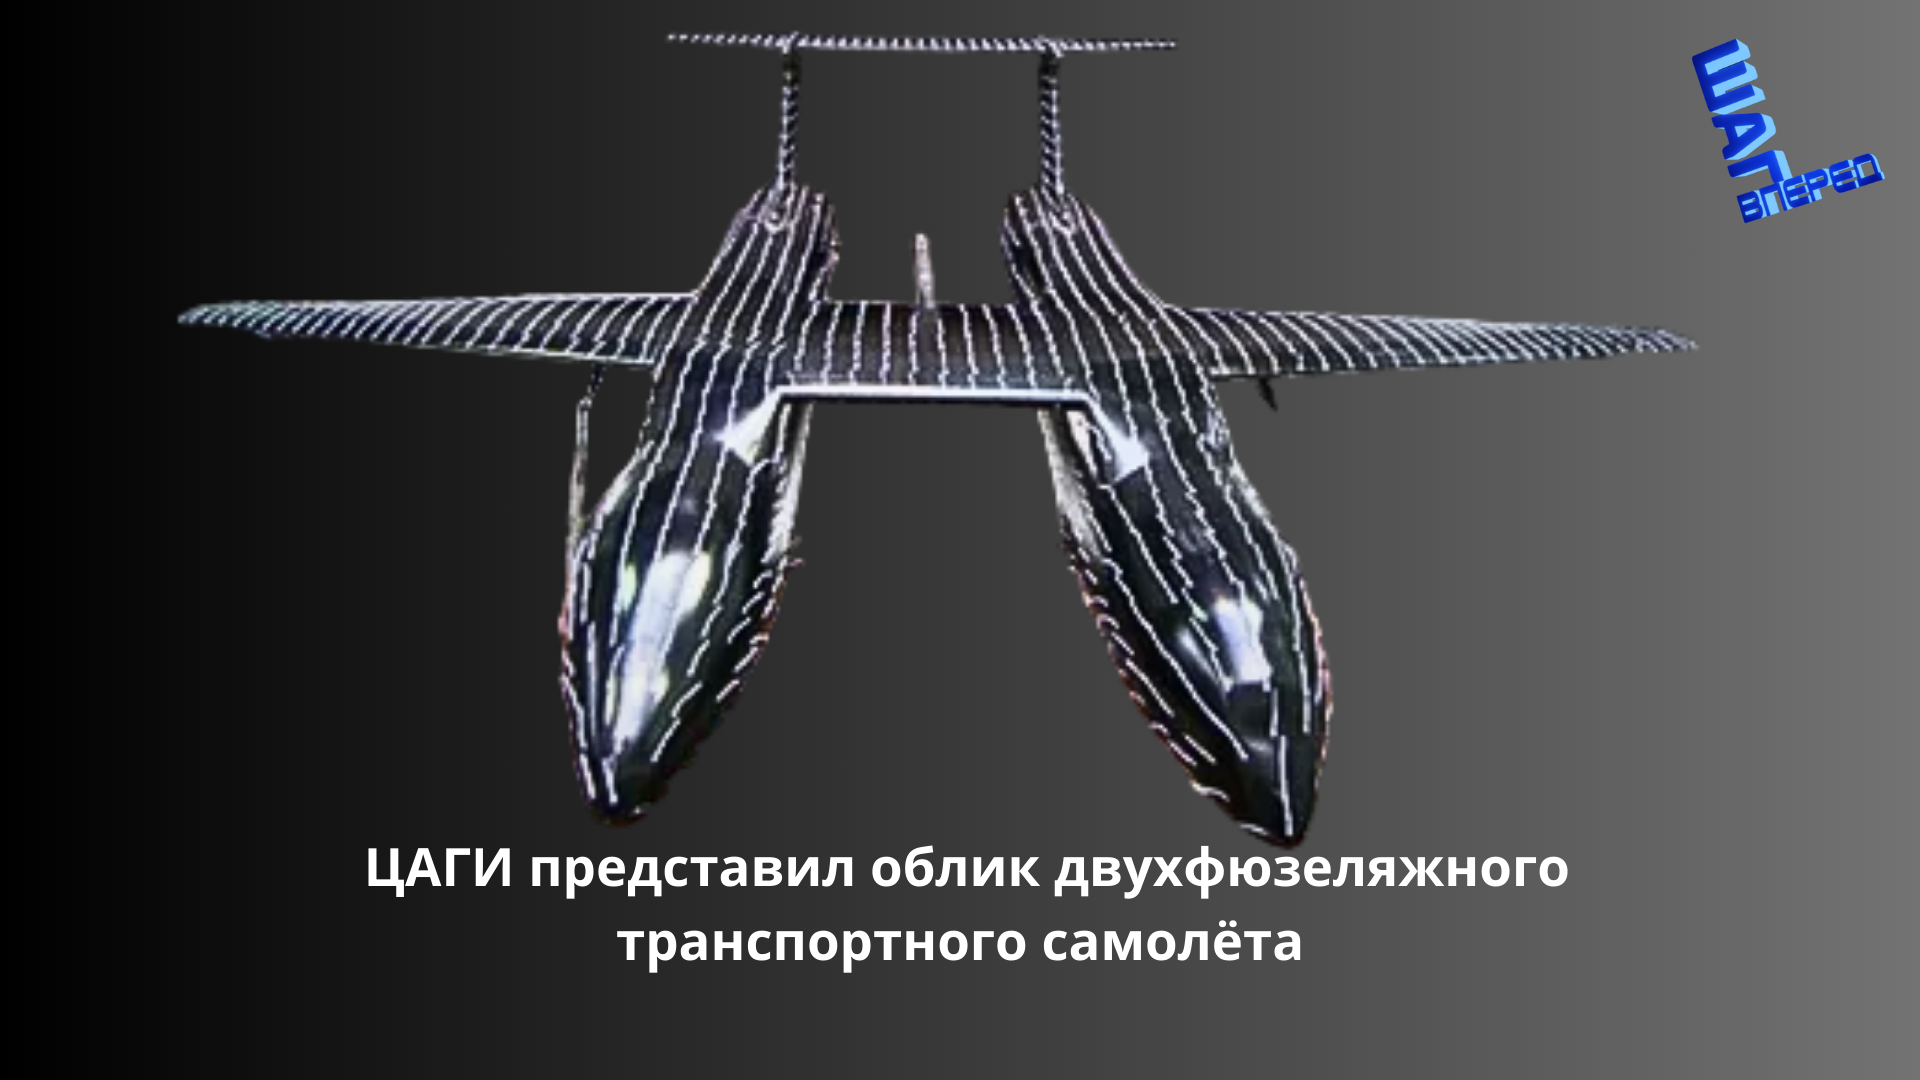 ЦАГИ представил облик двухфюзеляжного транспортного самолёта